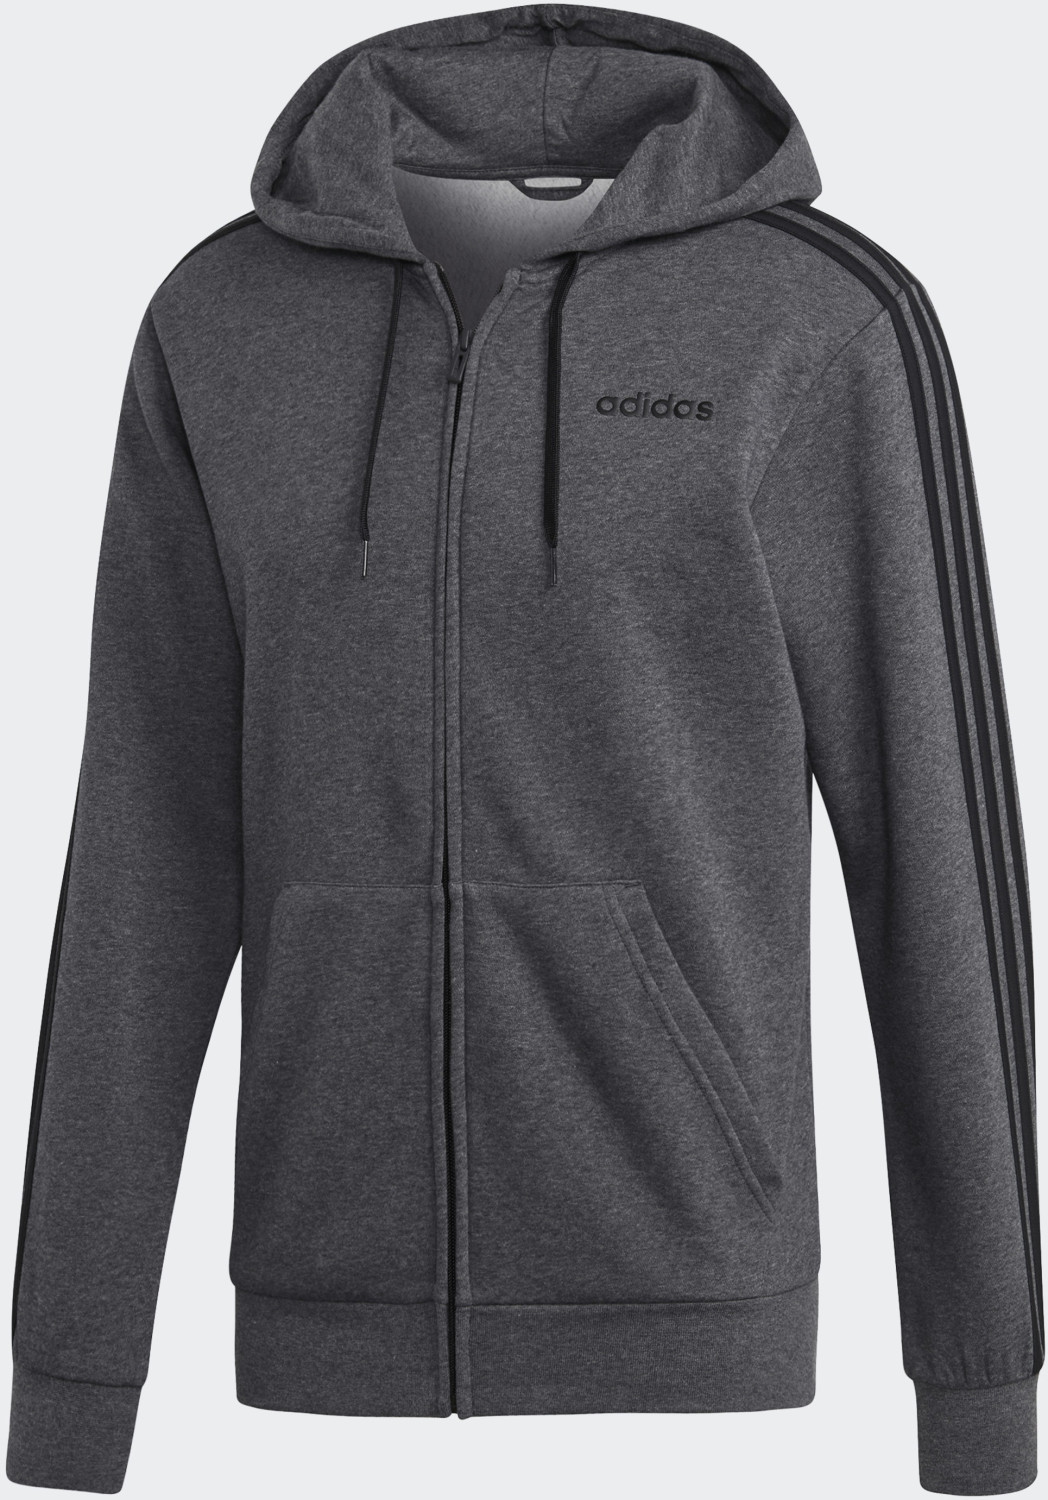 Adidas Essentials 3-Streifen Fleece Kapuzenjacke dark grey heather/black  (DX2528) ab 59,95 € | Preisvergleich bei